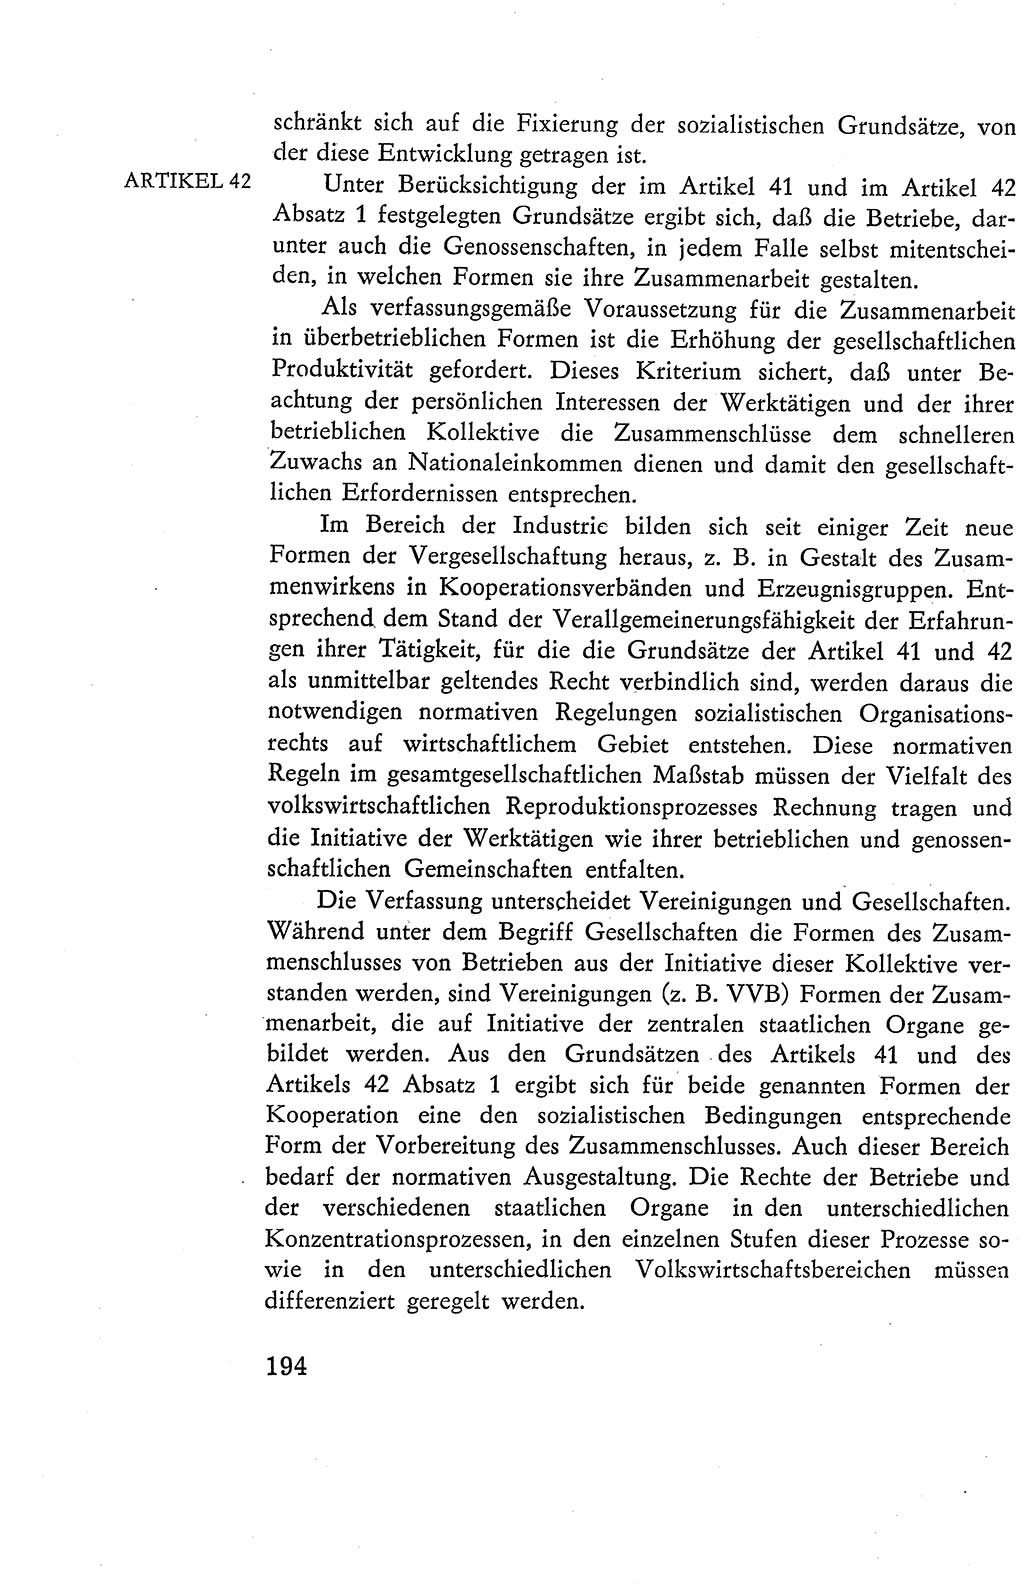 Verfassung der Deutschen Demokratischen Republik (DDR), Dokumente, Kommentar 1969, Band 2, Seite 194 (Verf. DDR Dok. Komm. 1969, Bd. 2, S. 194)